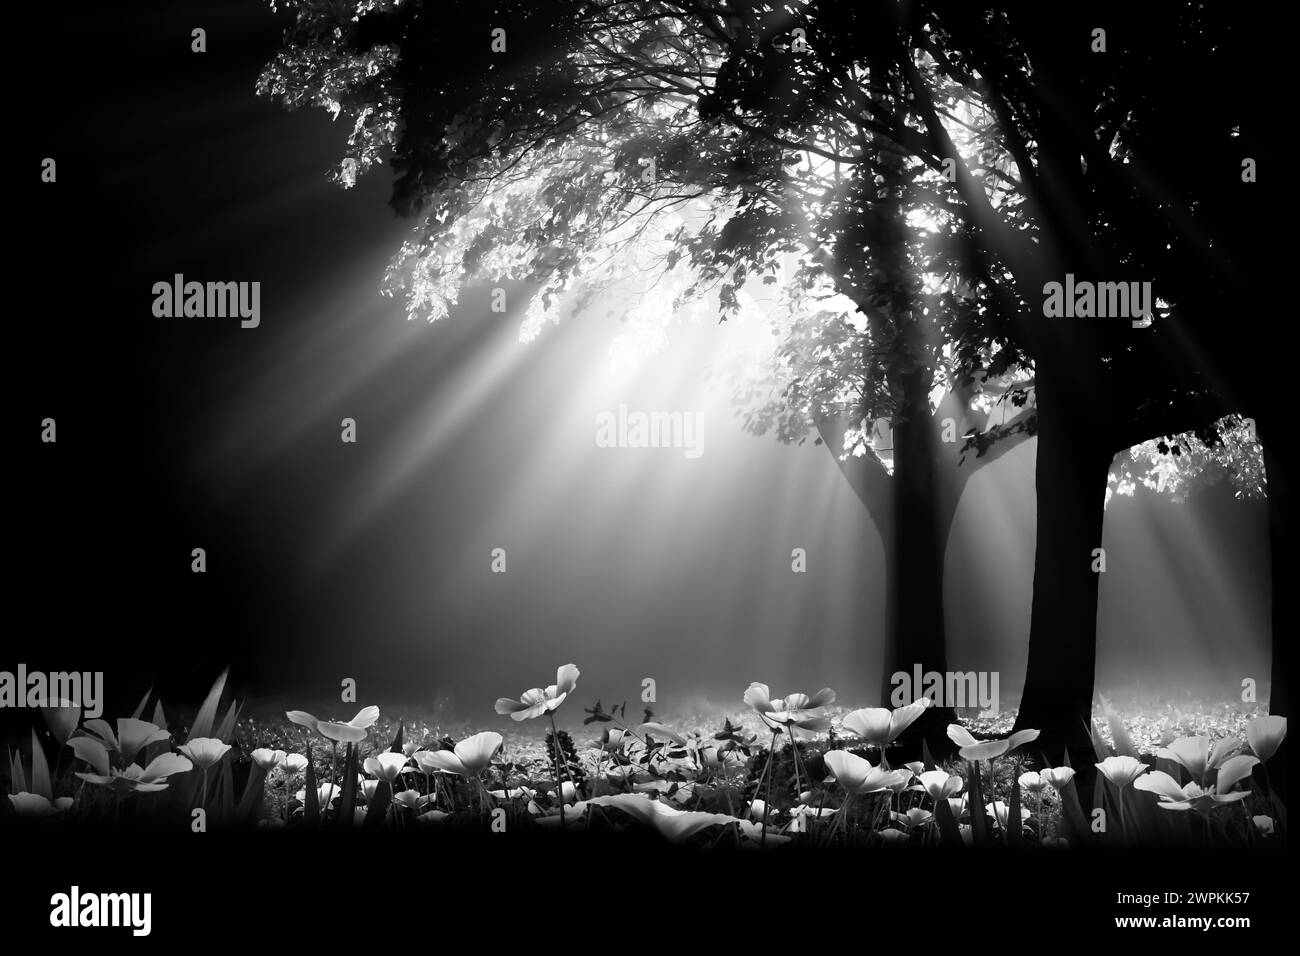 Lumière de nuit brillante à travers l'arbre en noir et blanc artistique et fleurs de printemps sous le paysage d'arbres. Illustration monotone dans Norfolk UK Banque D'Images